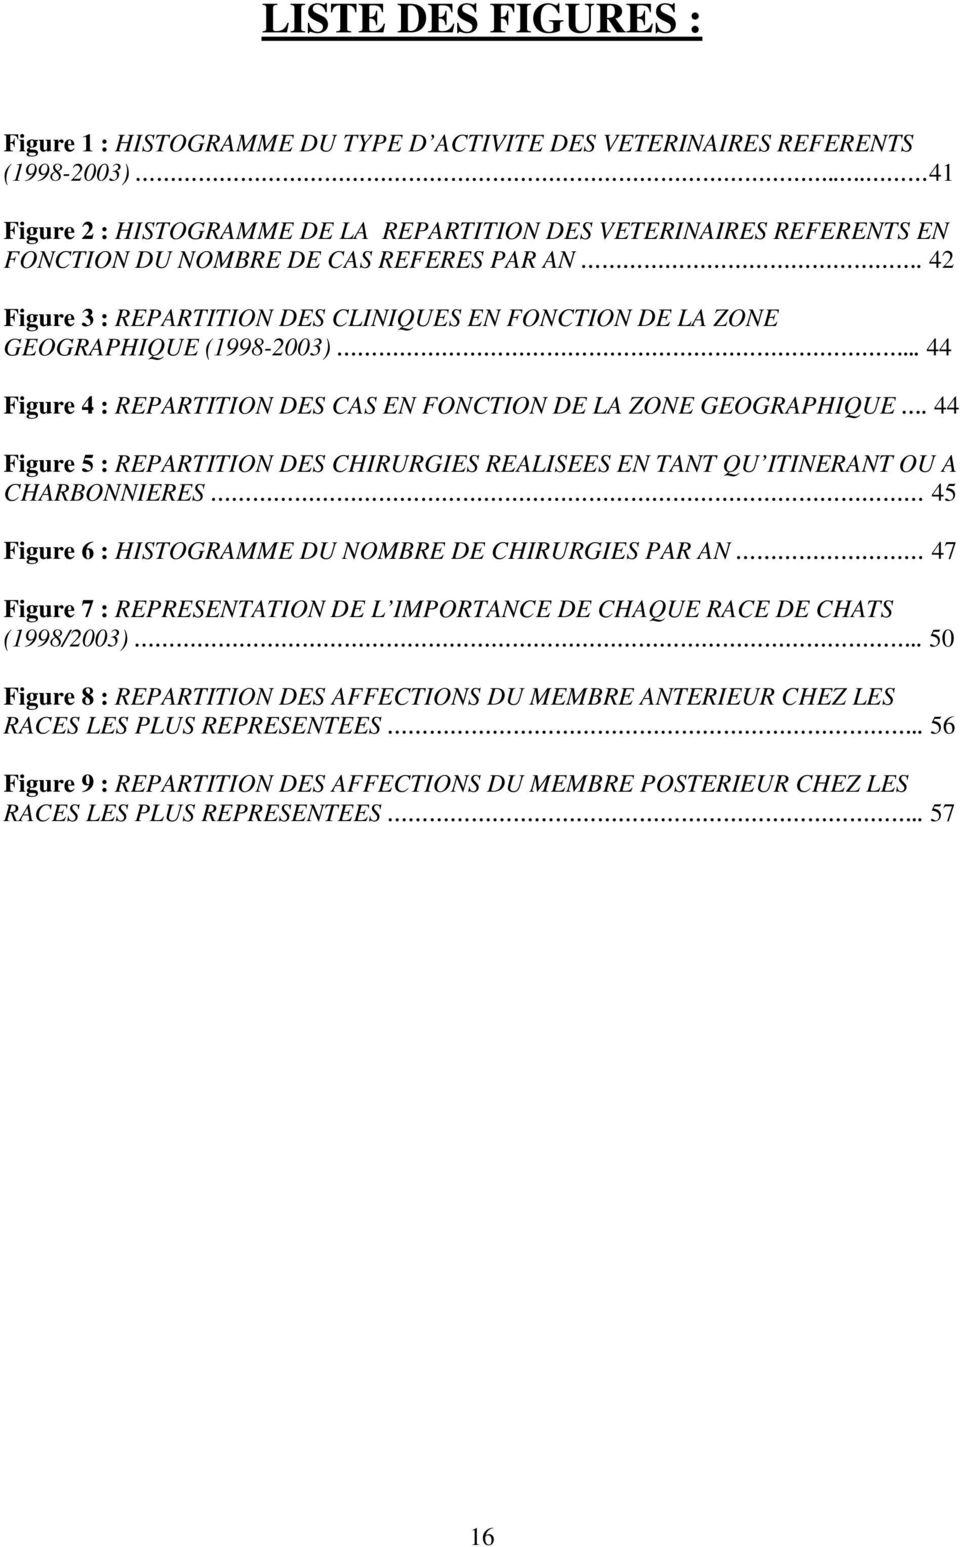 42 Figure 3 : REPARTITION DES CLINIQUES EN FONCTION DE LA ZONE GEOGRAPHIQUE (1998-2003)... 44 Figure 4 : REPARTITION DES CAS EN FONCTION DE LA ZONE GEOGRAPHIQUE.